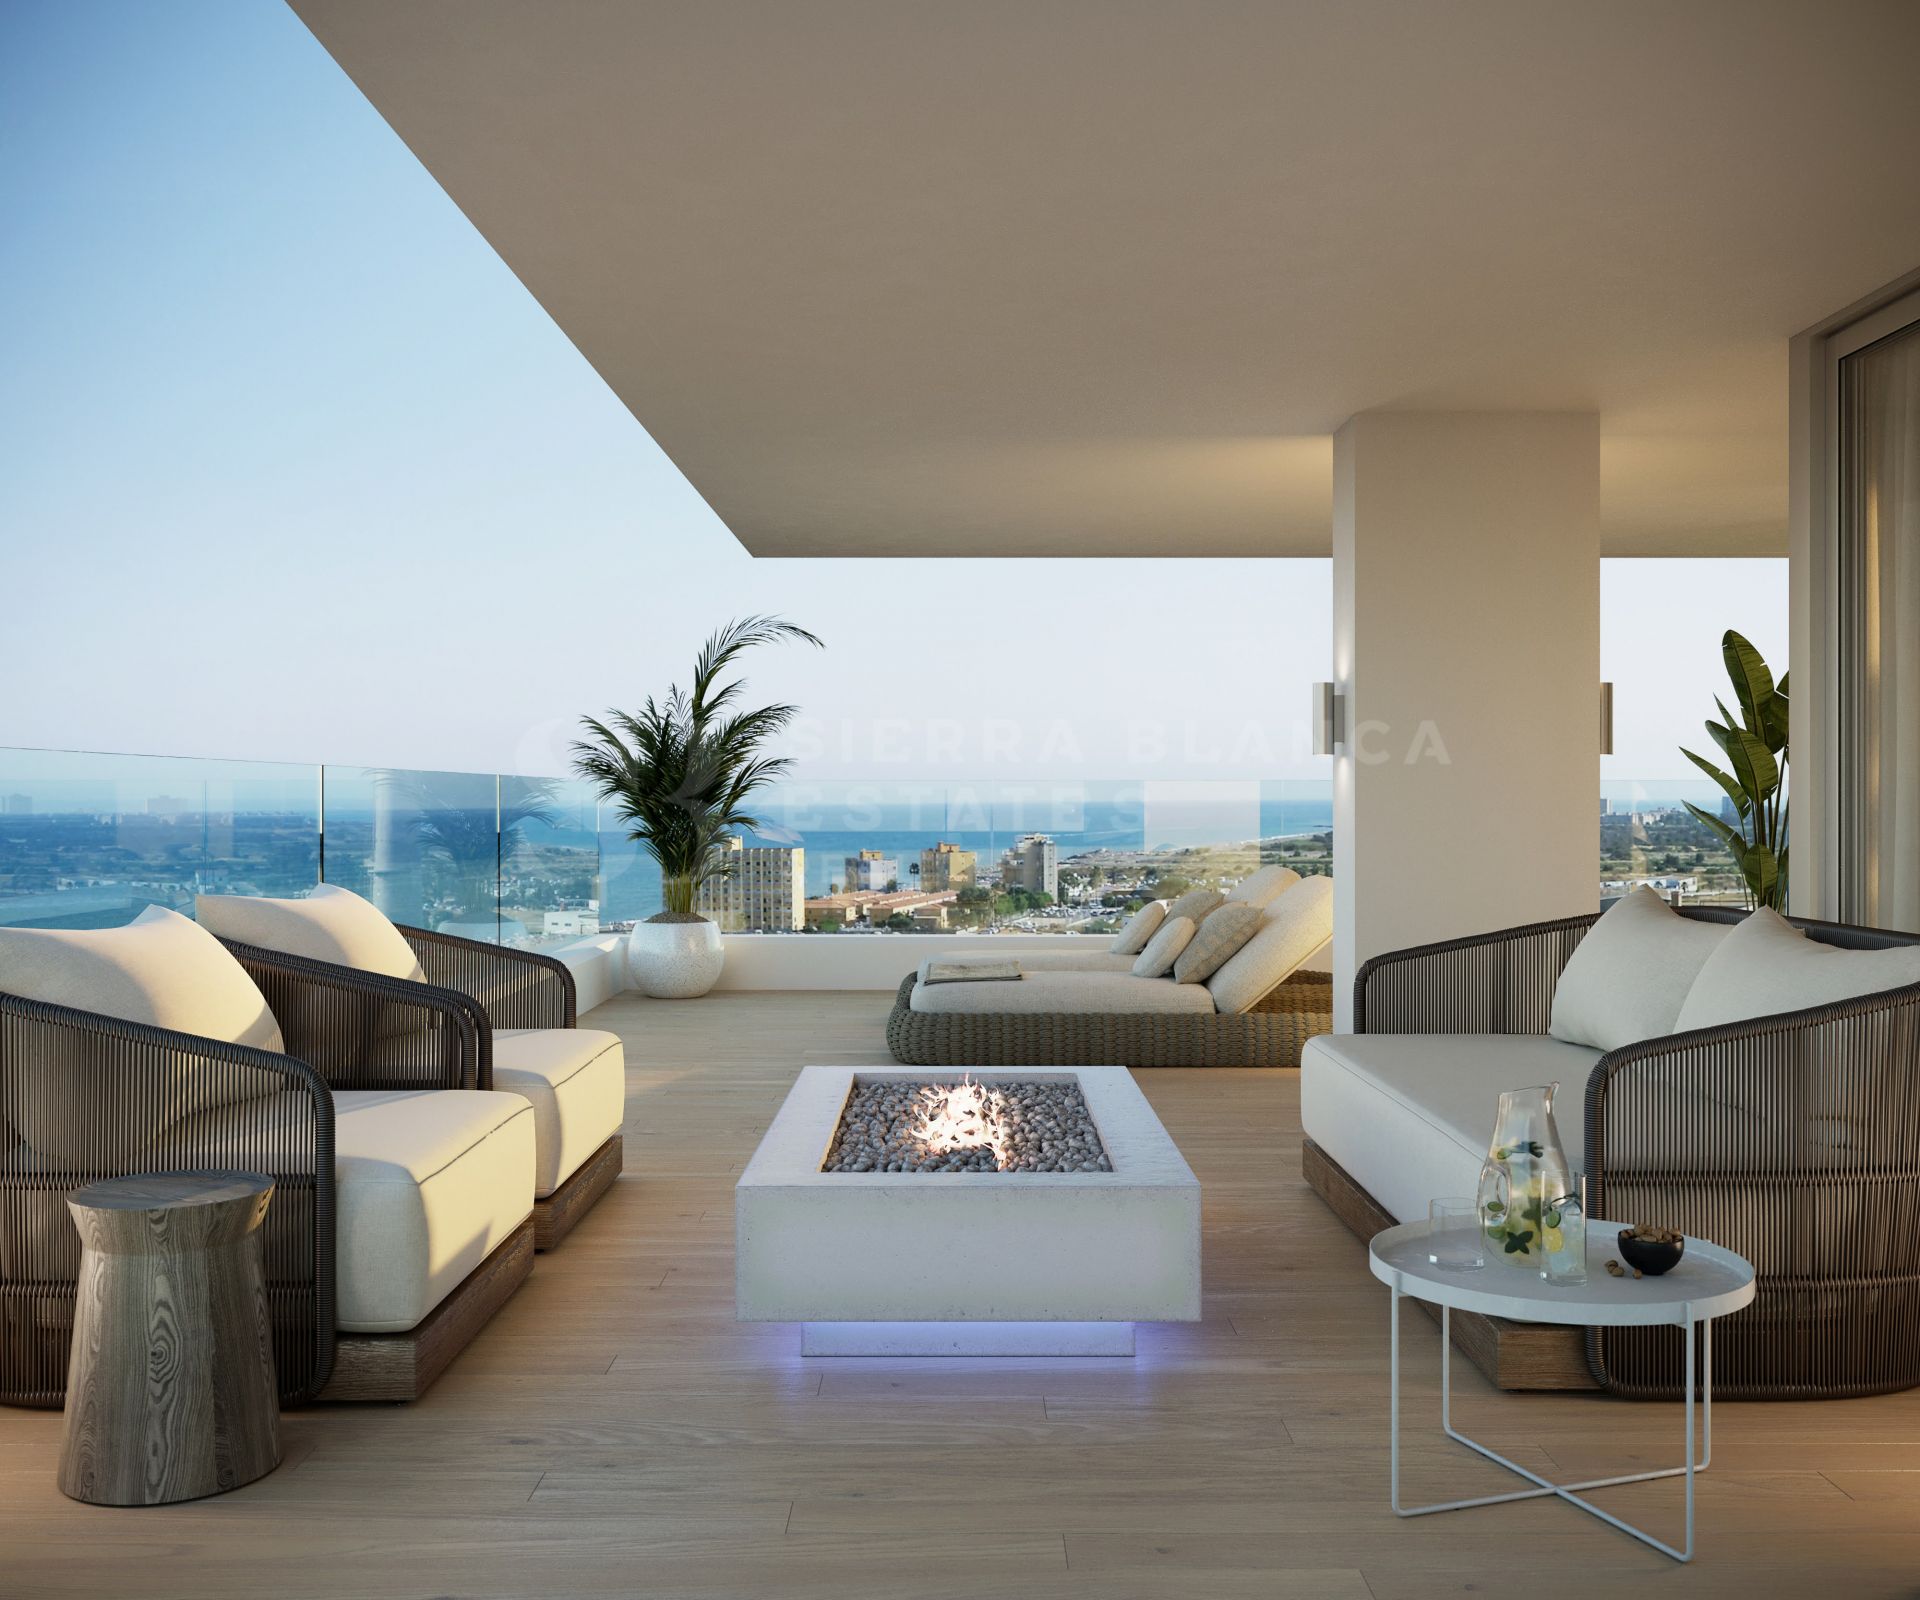 Sierra Blanca Tower - Apartamentos de lujo en primera línea de playa en Malaga